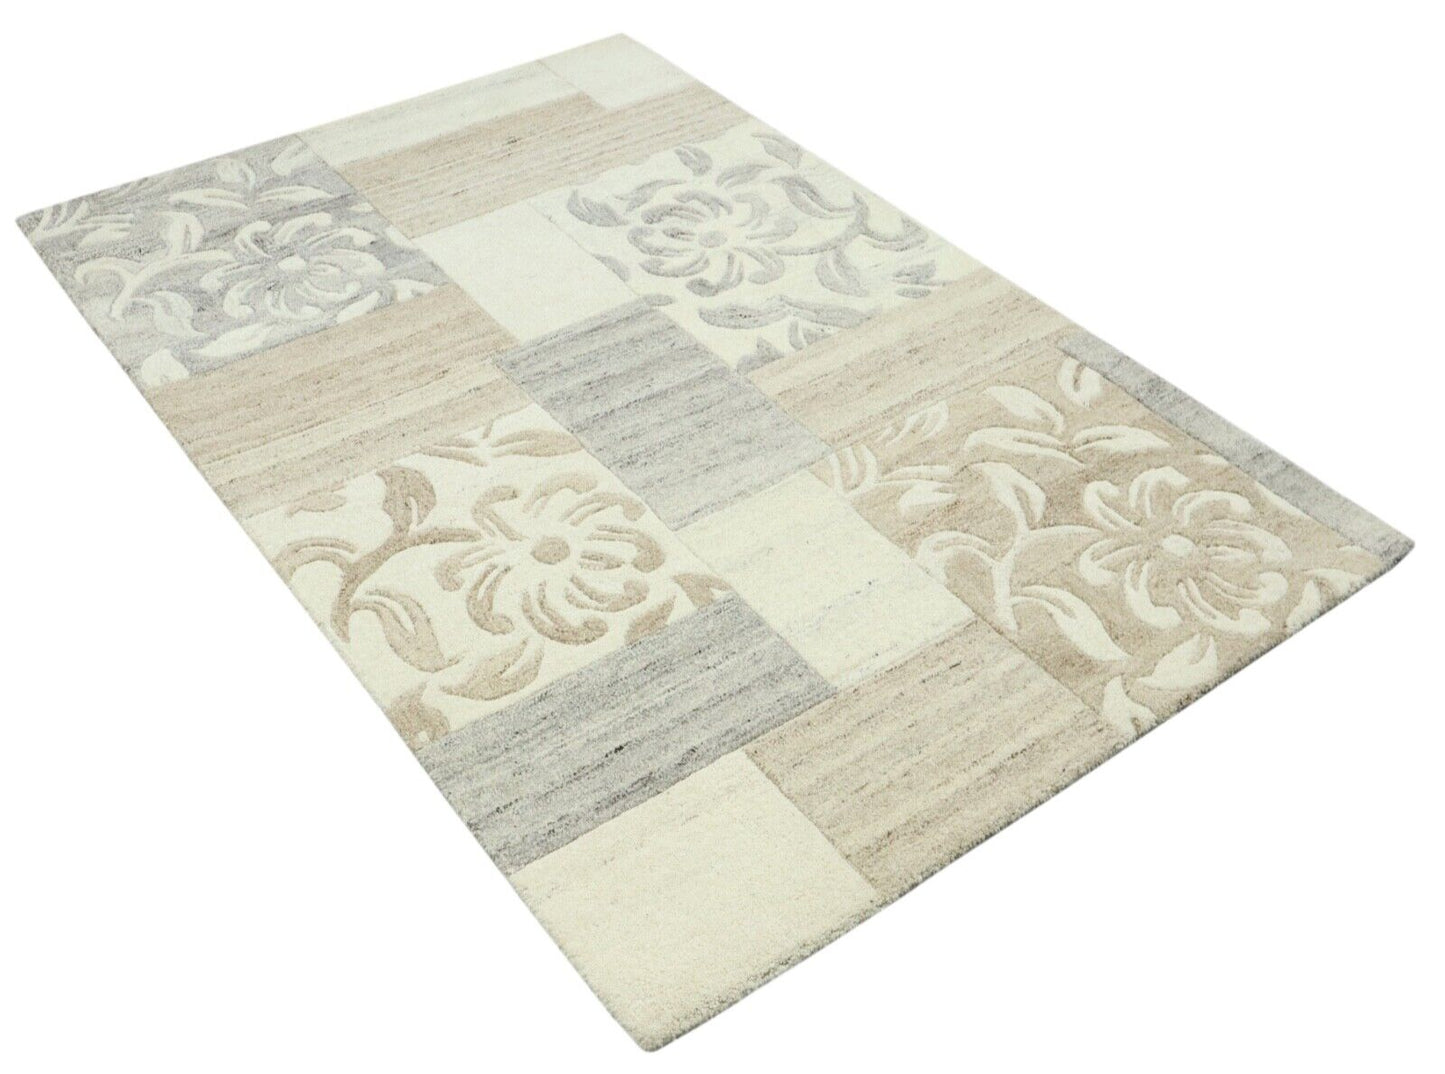 Grau Beige Orient Teppich 100% Wolle 120X180 cm Handarbeit Handgetuftet T973